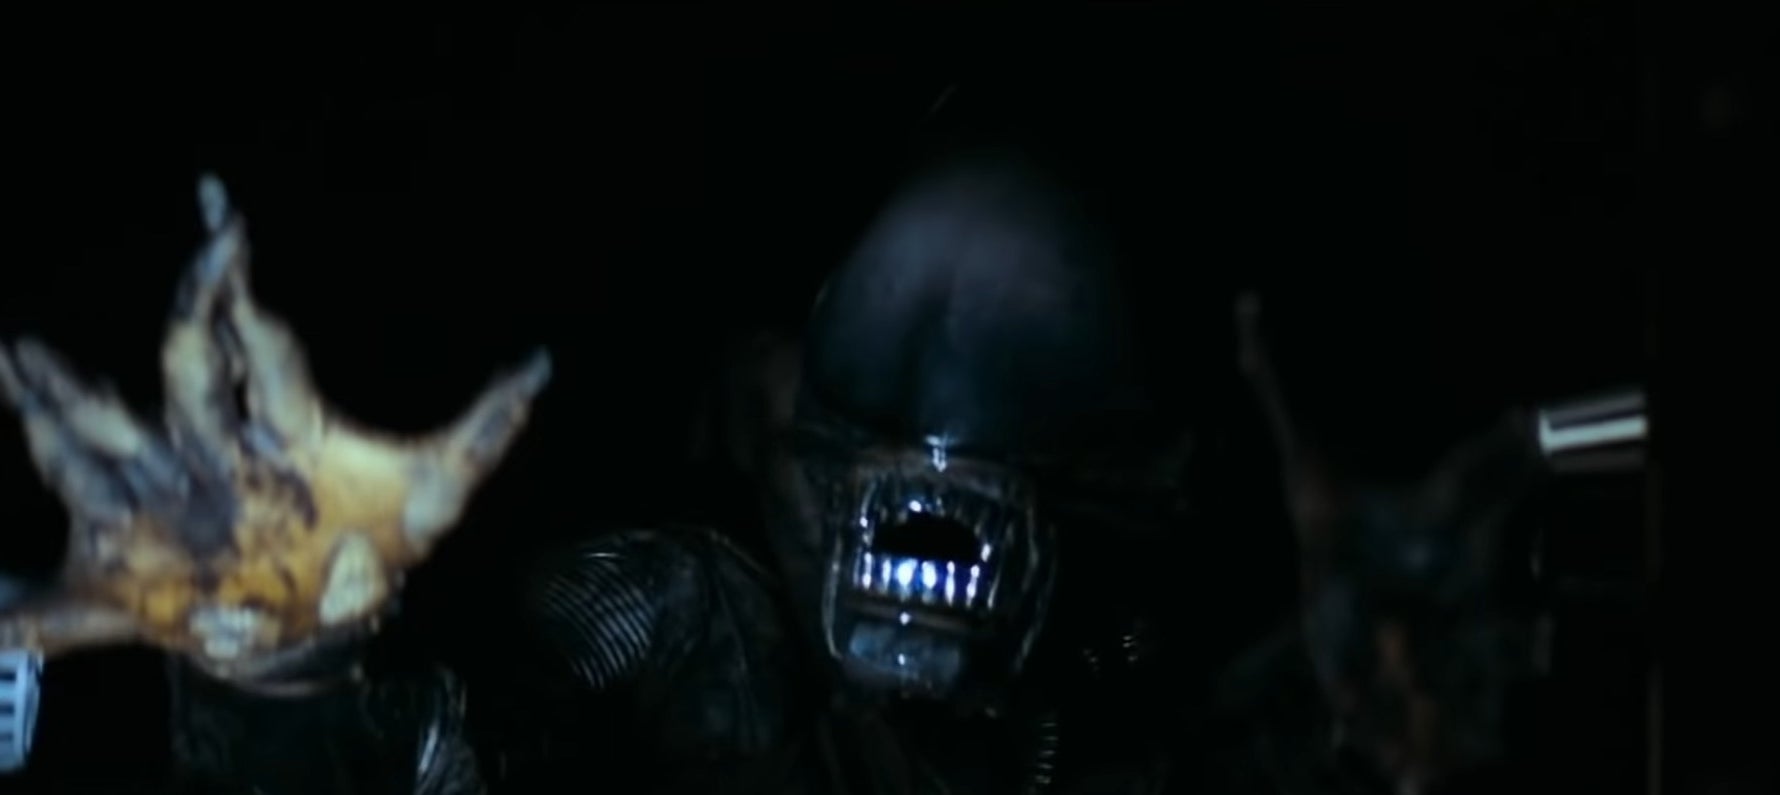 The Xenomorph hissing in the dark in &quot;Alien&quot;